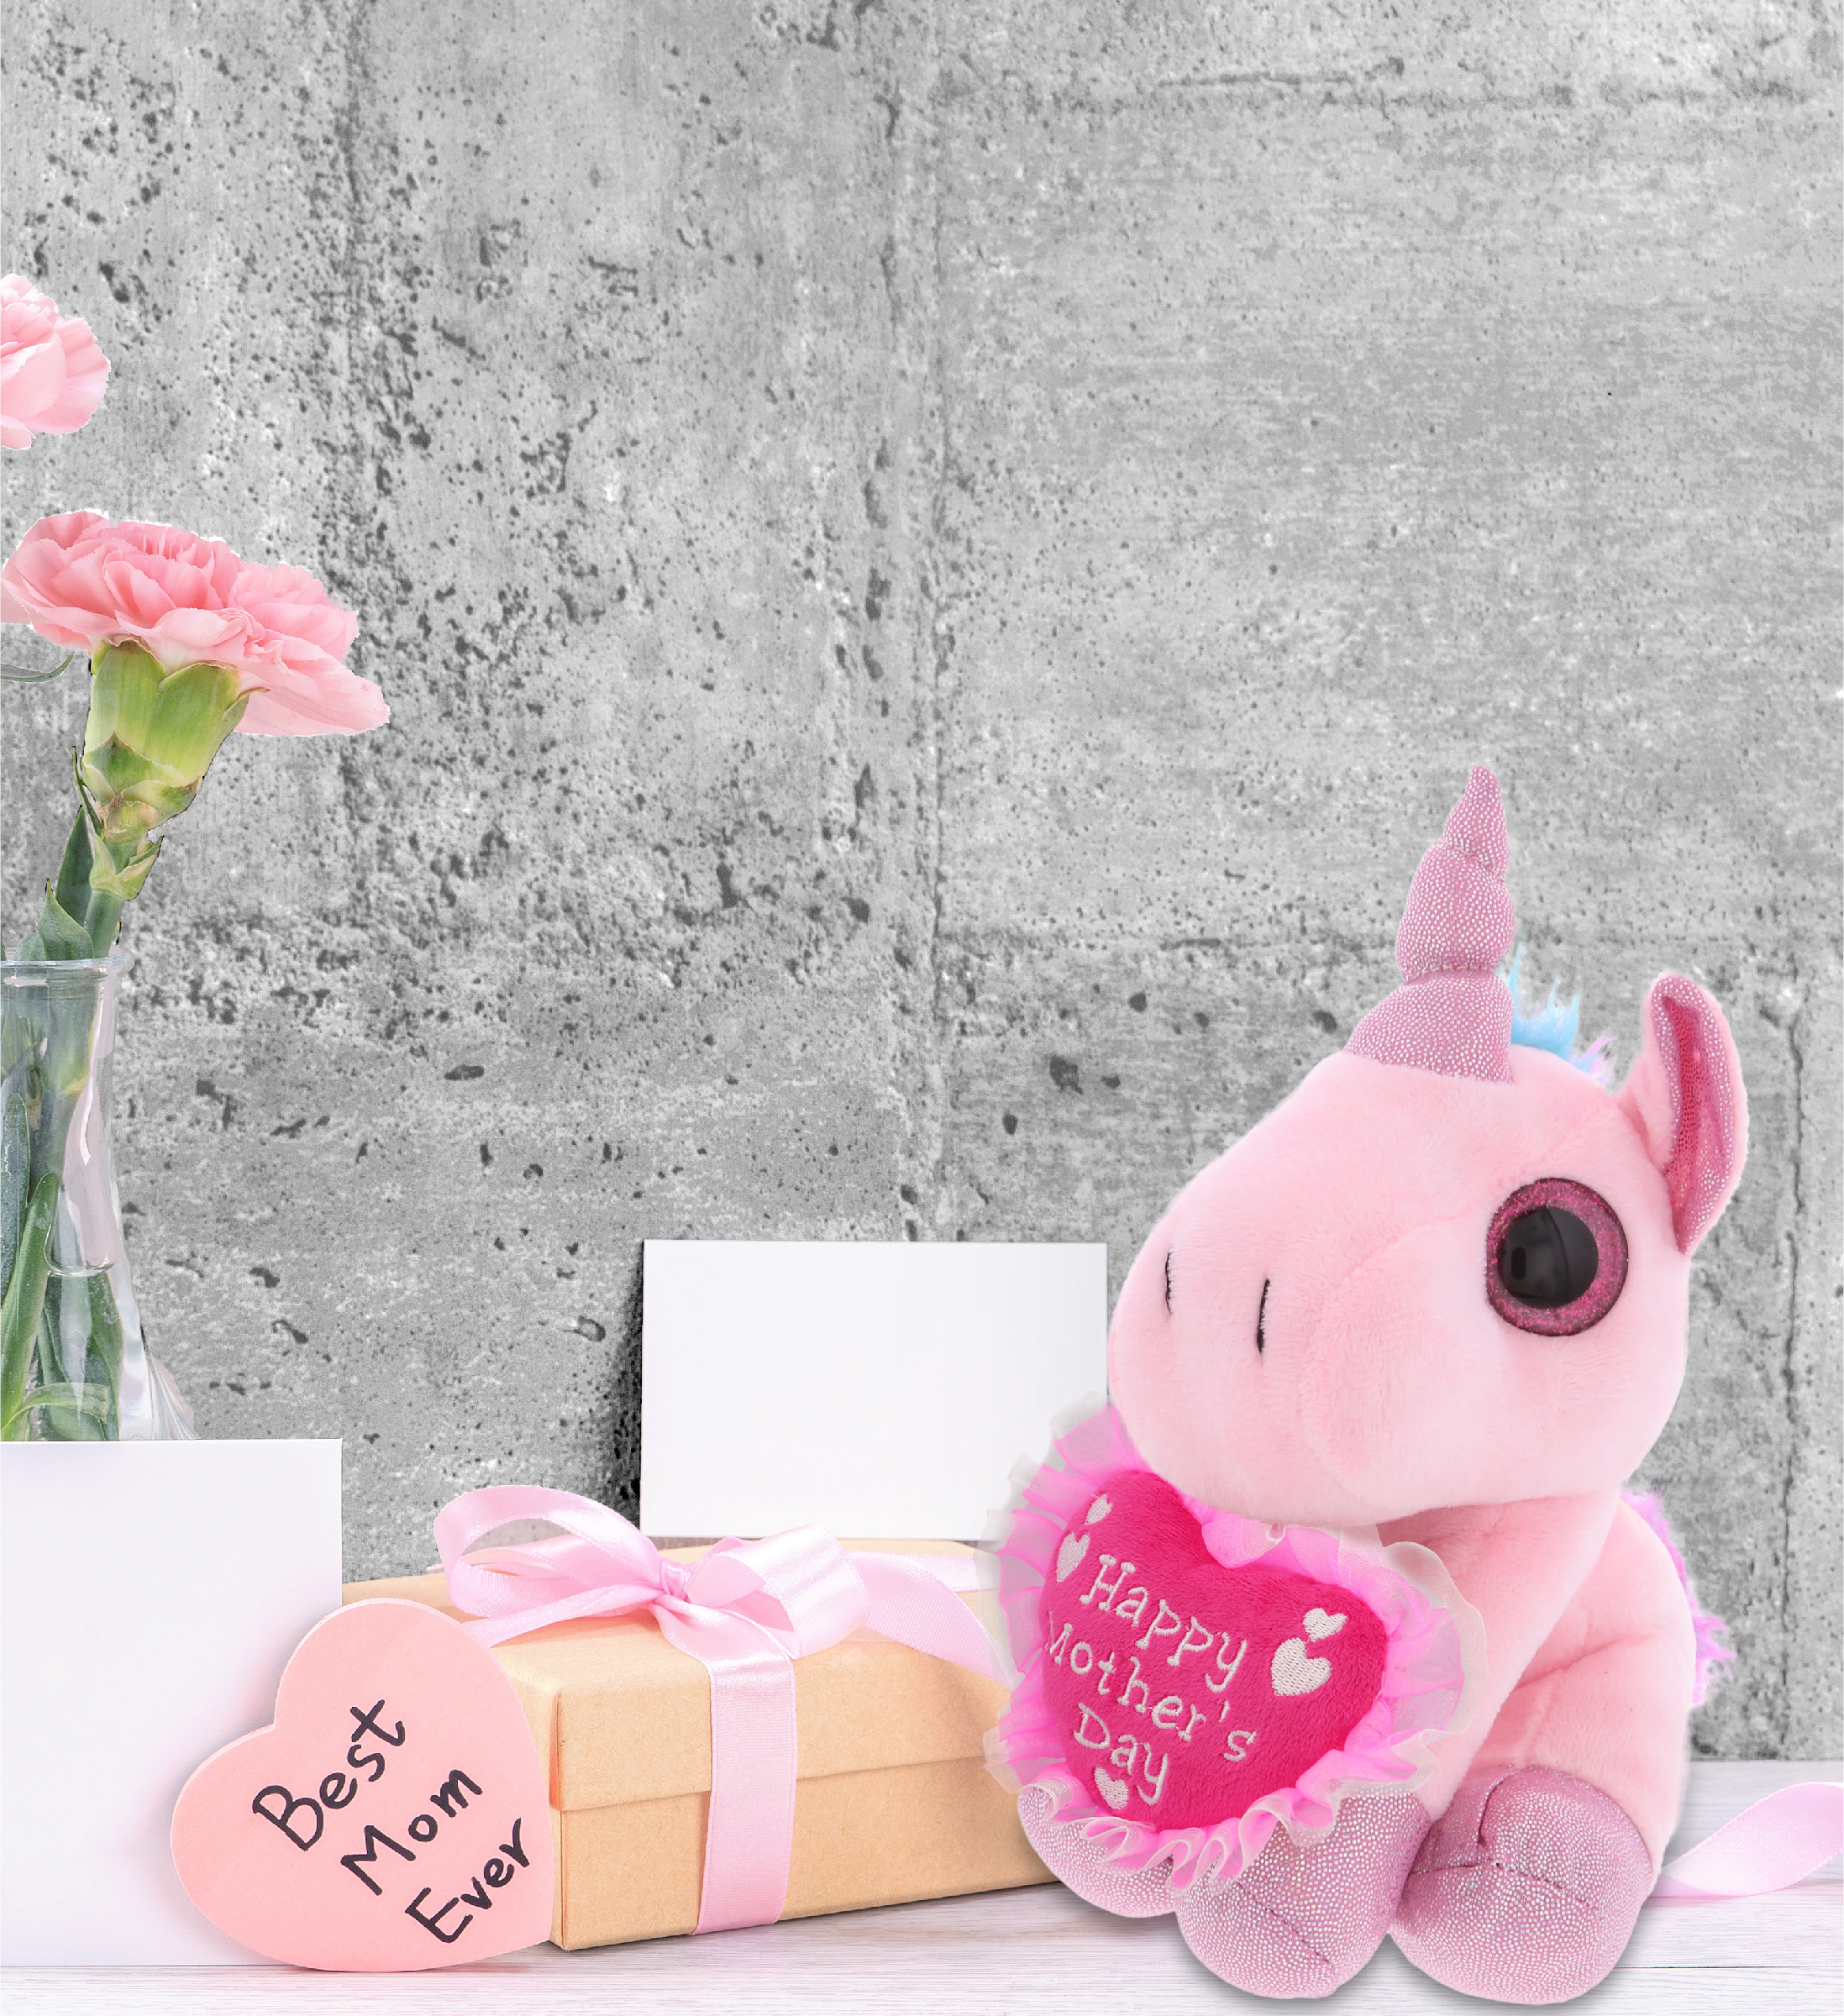 DolliBu Pink Unicorn Plush Pen - Soft Fluffy Pink Unicorn Stuffed